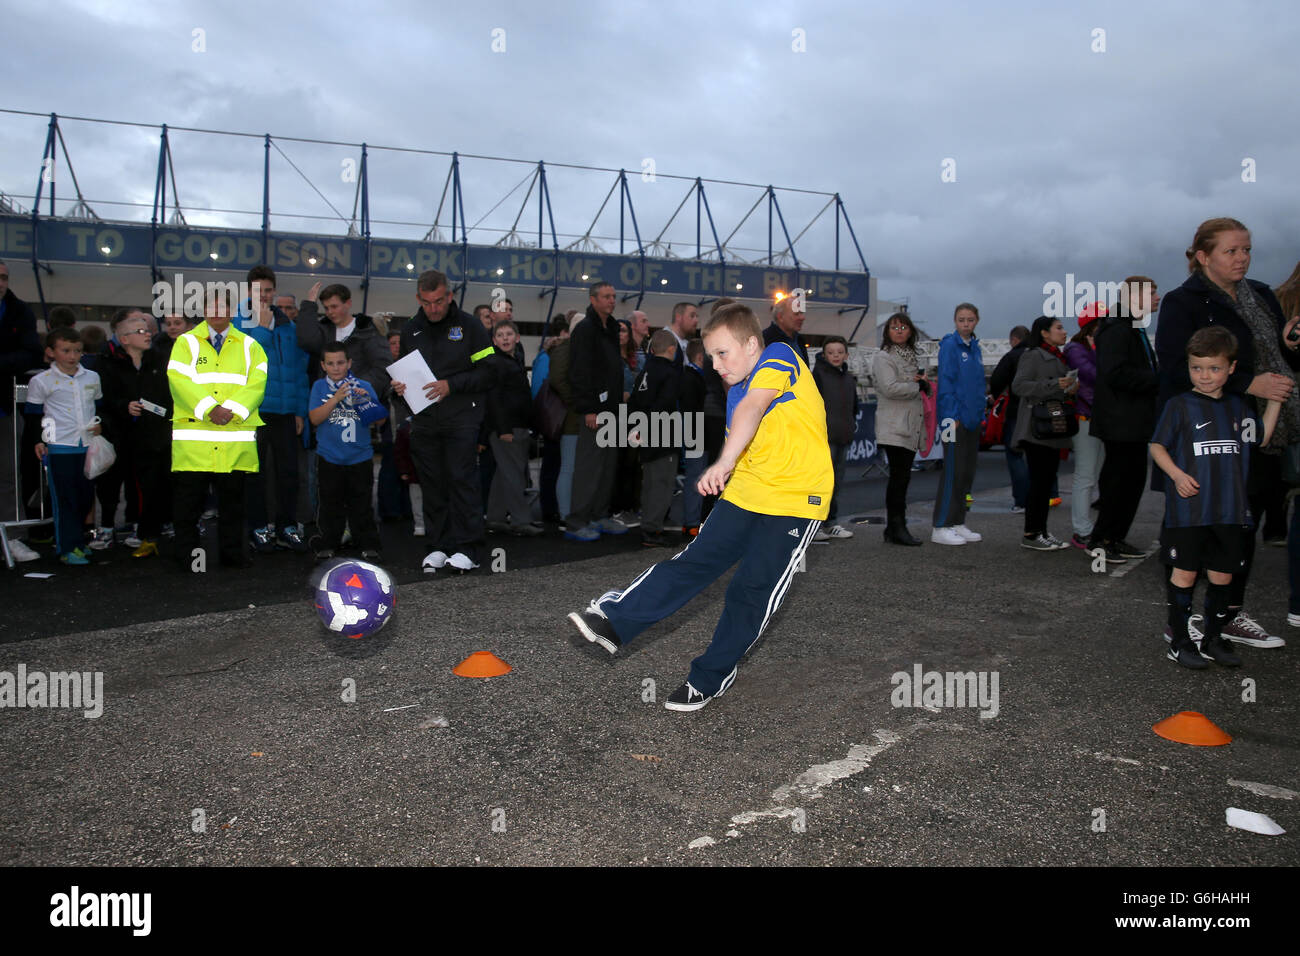 Fútbol - U21 Barclays Premier League - Everton v Chelsea - Goodison Park Foto de stock